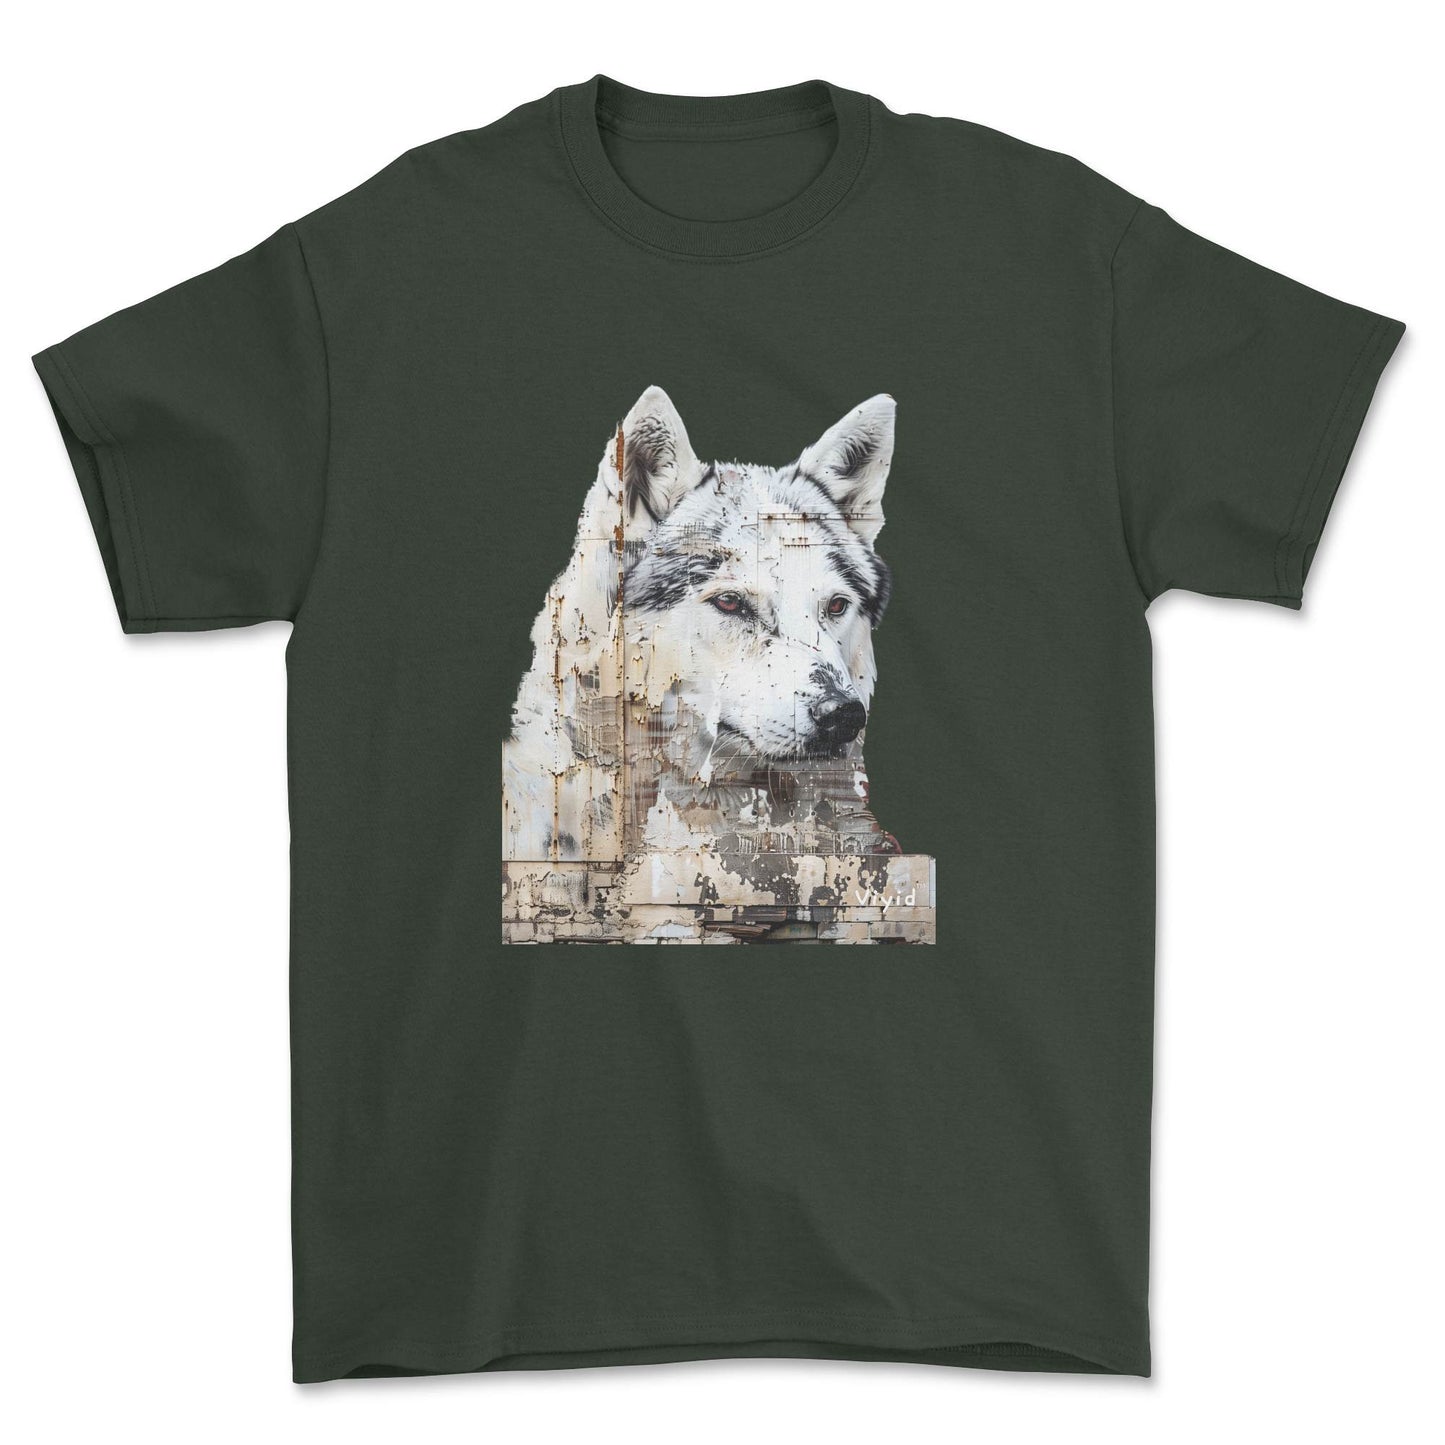 Siberian Husky adult t-shirt forest green